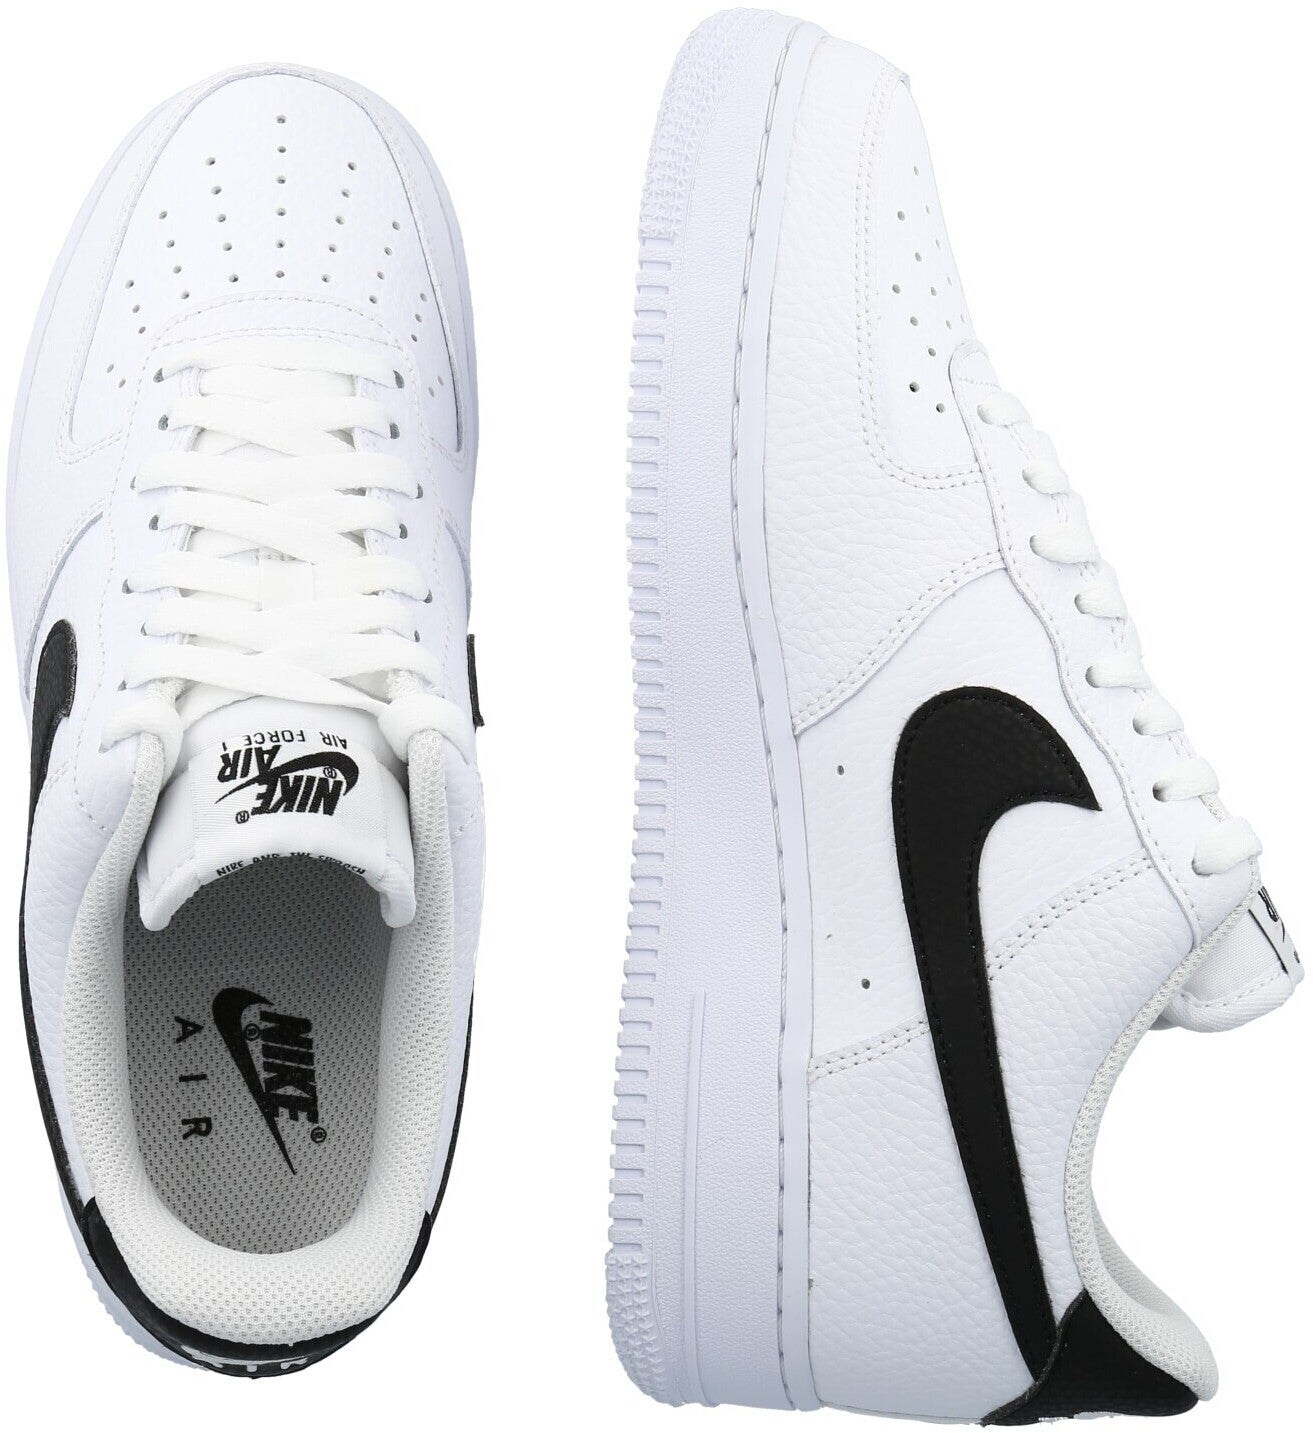 Nike Air Force 1 ‘07 Black/White - Nike